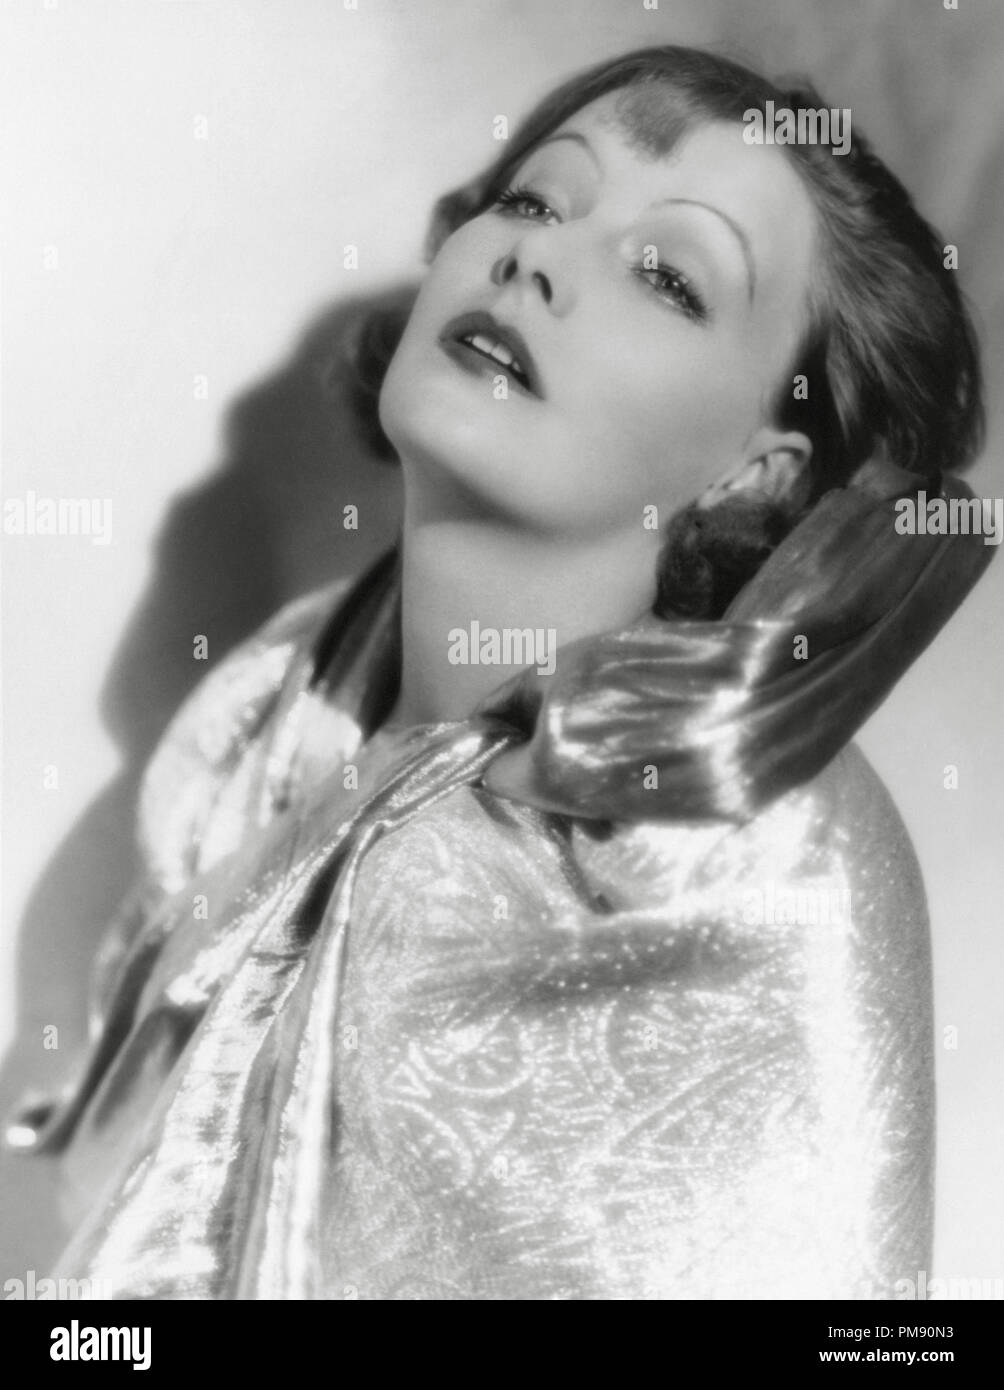 (Archivierung klassische Kino - Greta Garbo Retrospektive) Greta Garbo, "die Verführerin" 1926 MGM Datei Referenz # 31523 032 THA Stockfoto